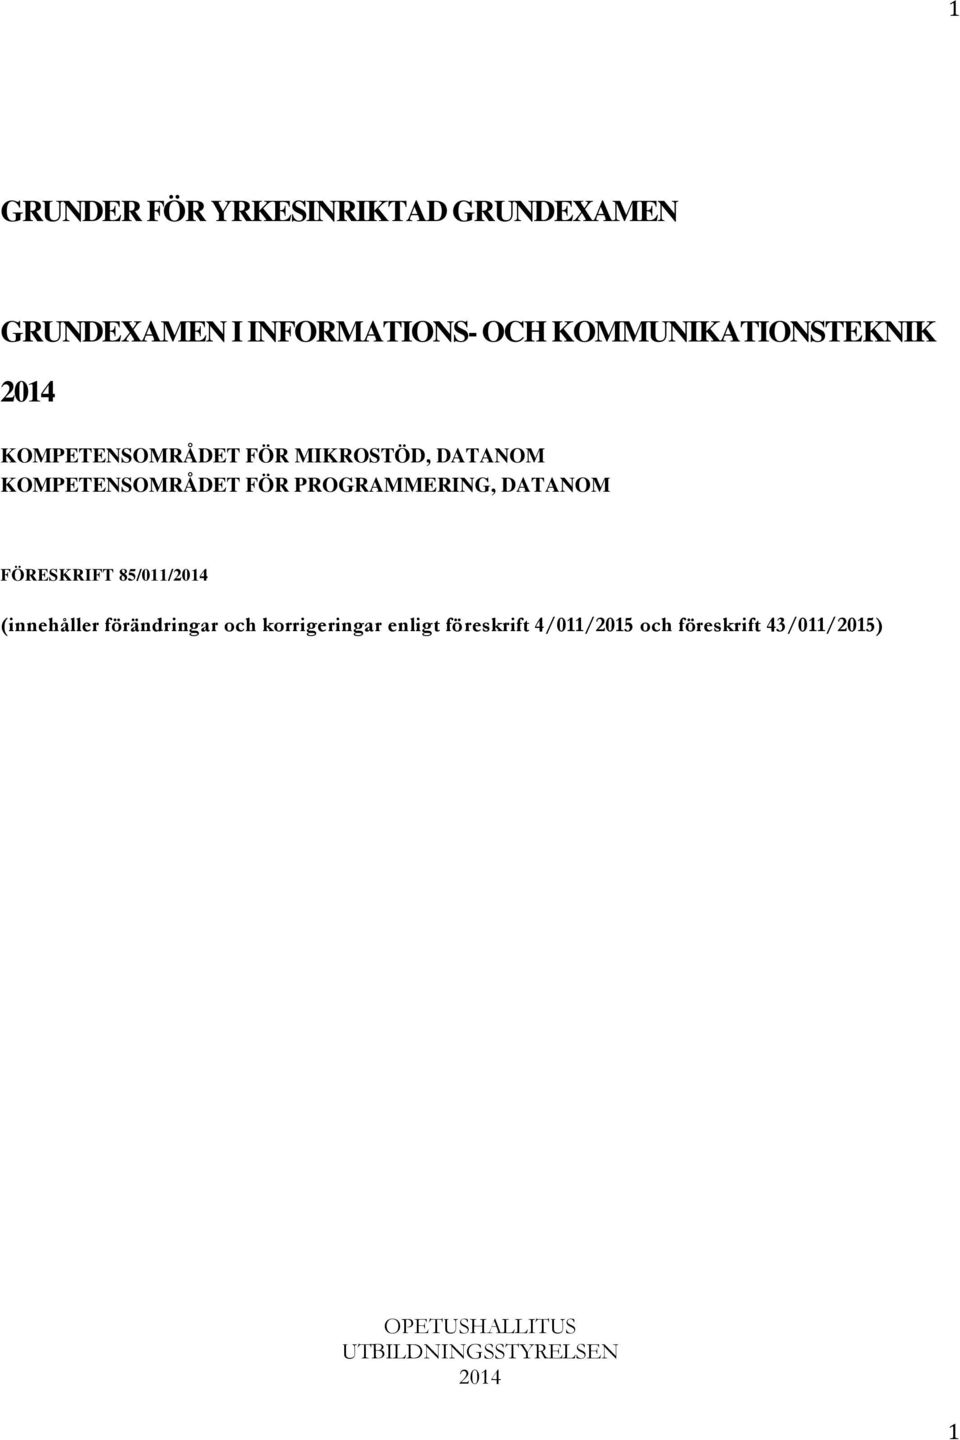 PROGRAMMERING, DATANOM FÖRESKRIFT 85/011/2014 (innehåller förändringar och